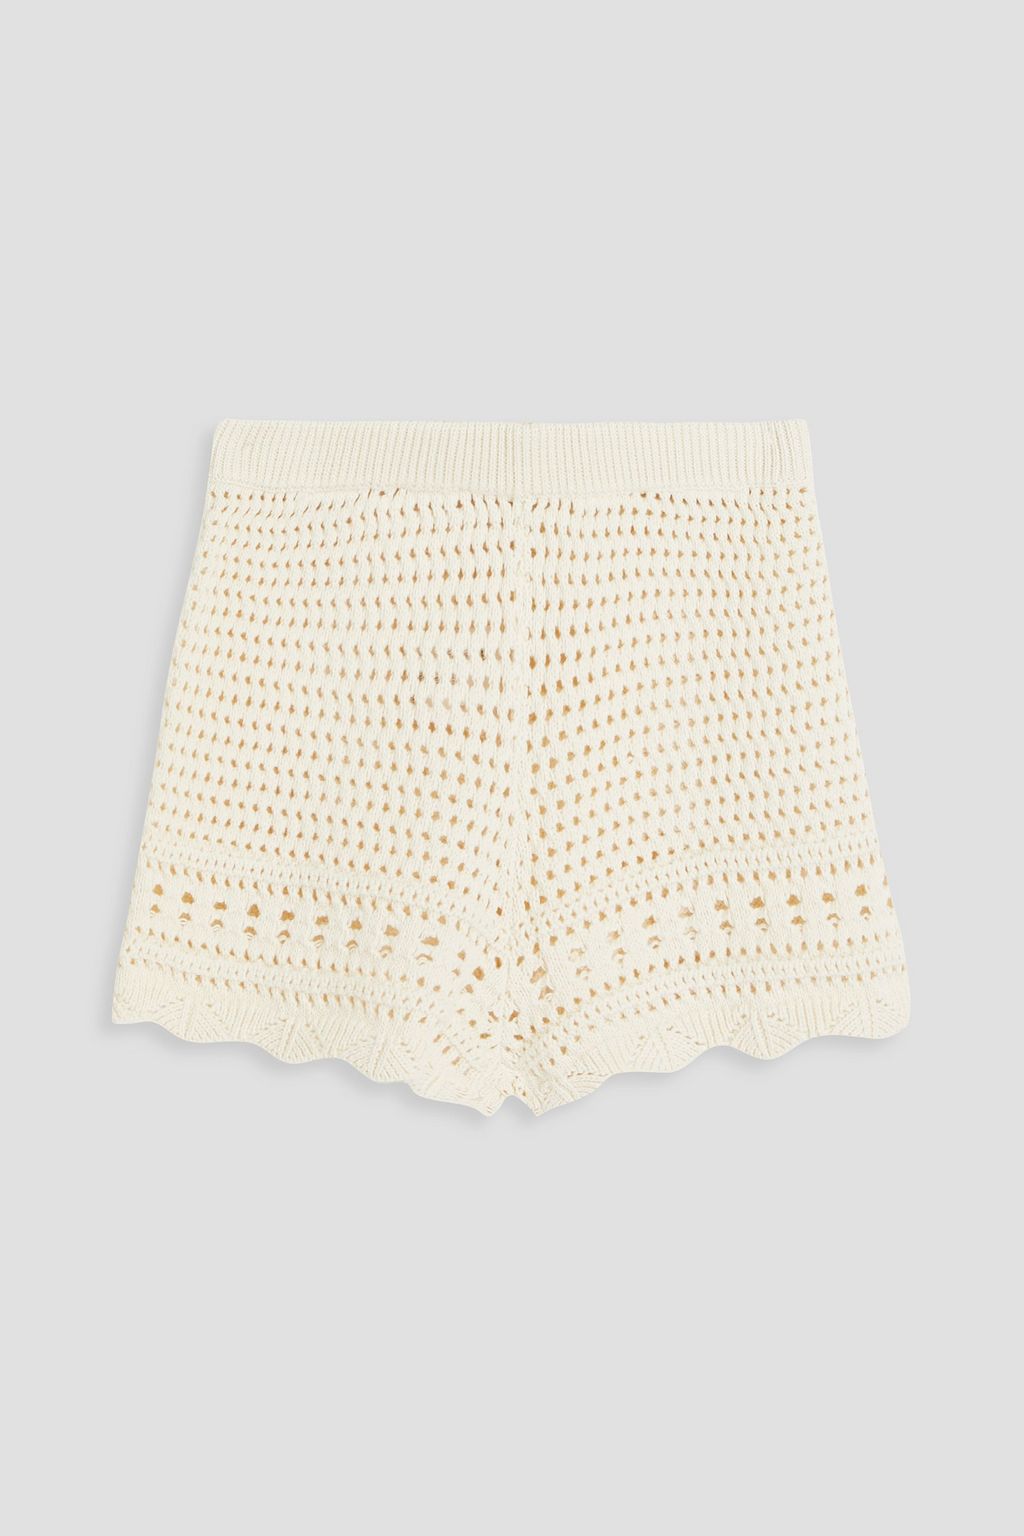 The Nolan Crocheted Cotton Shorts